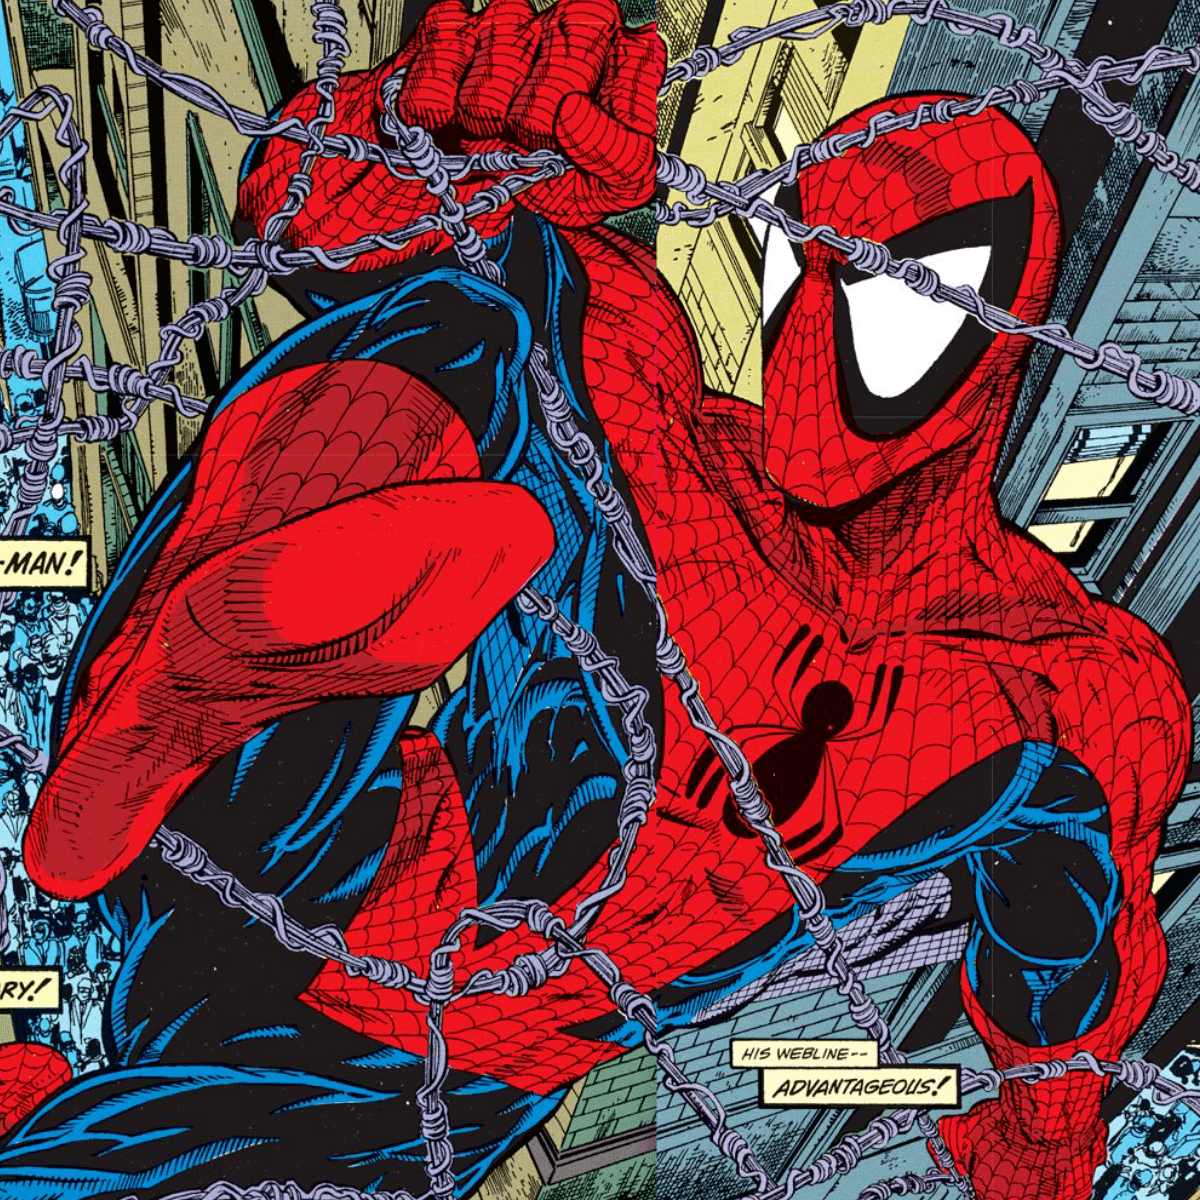 Spider-Man by Todd McFarlane